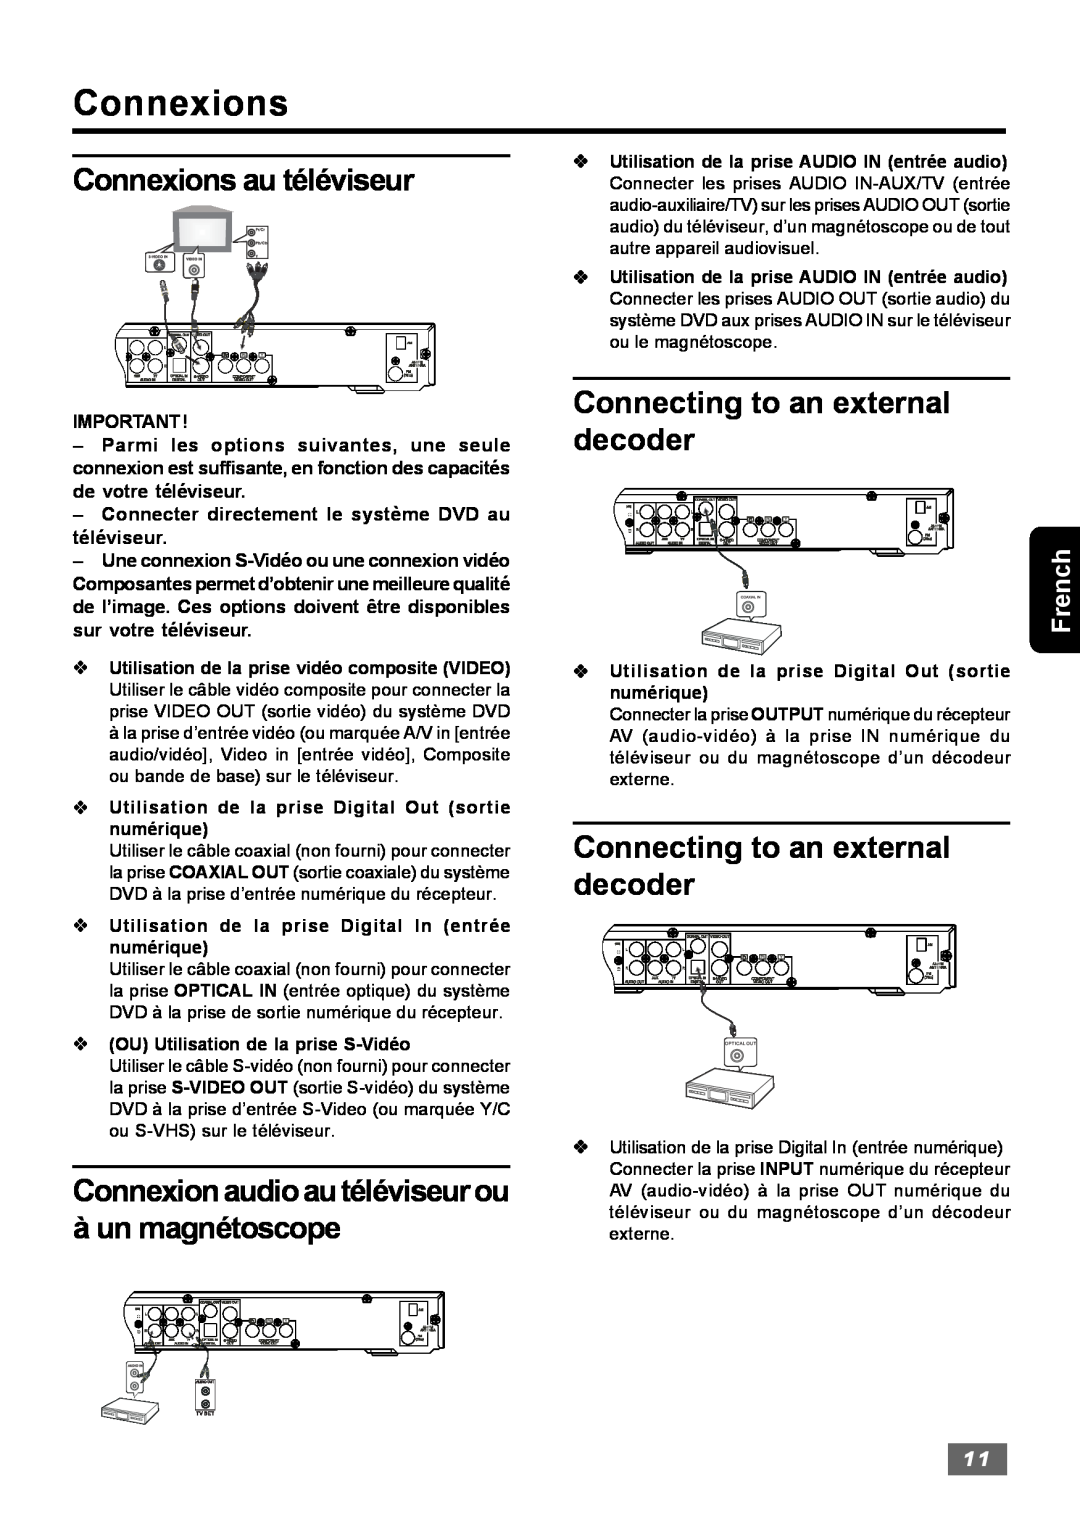 Insignia IS-HTIB102731 owner manual Connexions au téléviseur, Connexionaudioautéléviseurou à un magnétoscope, French 